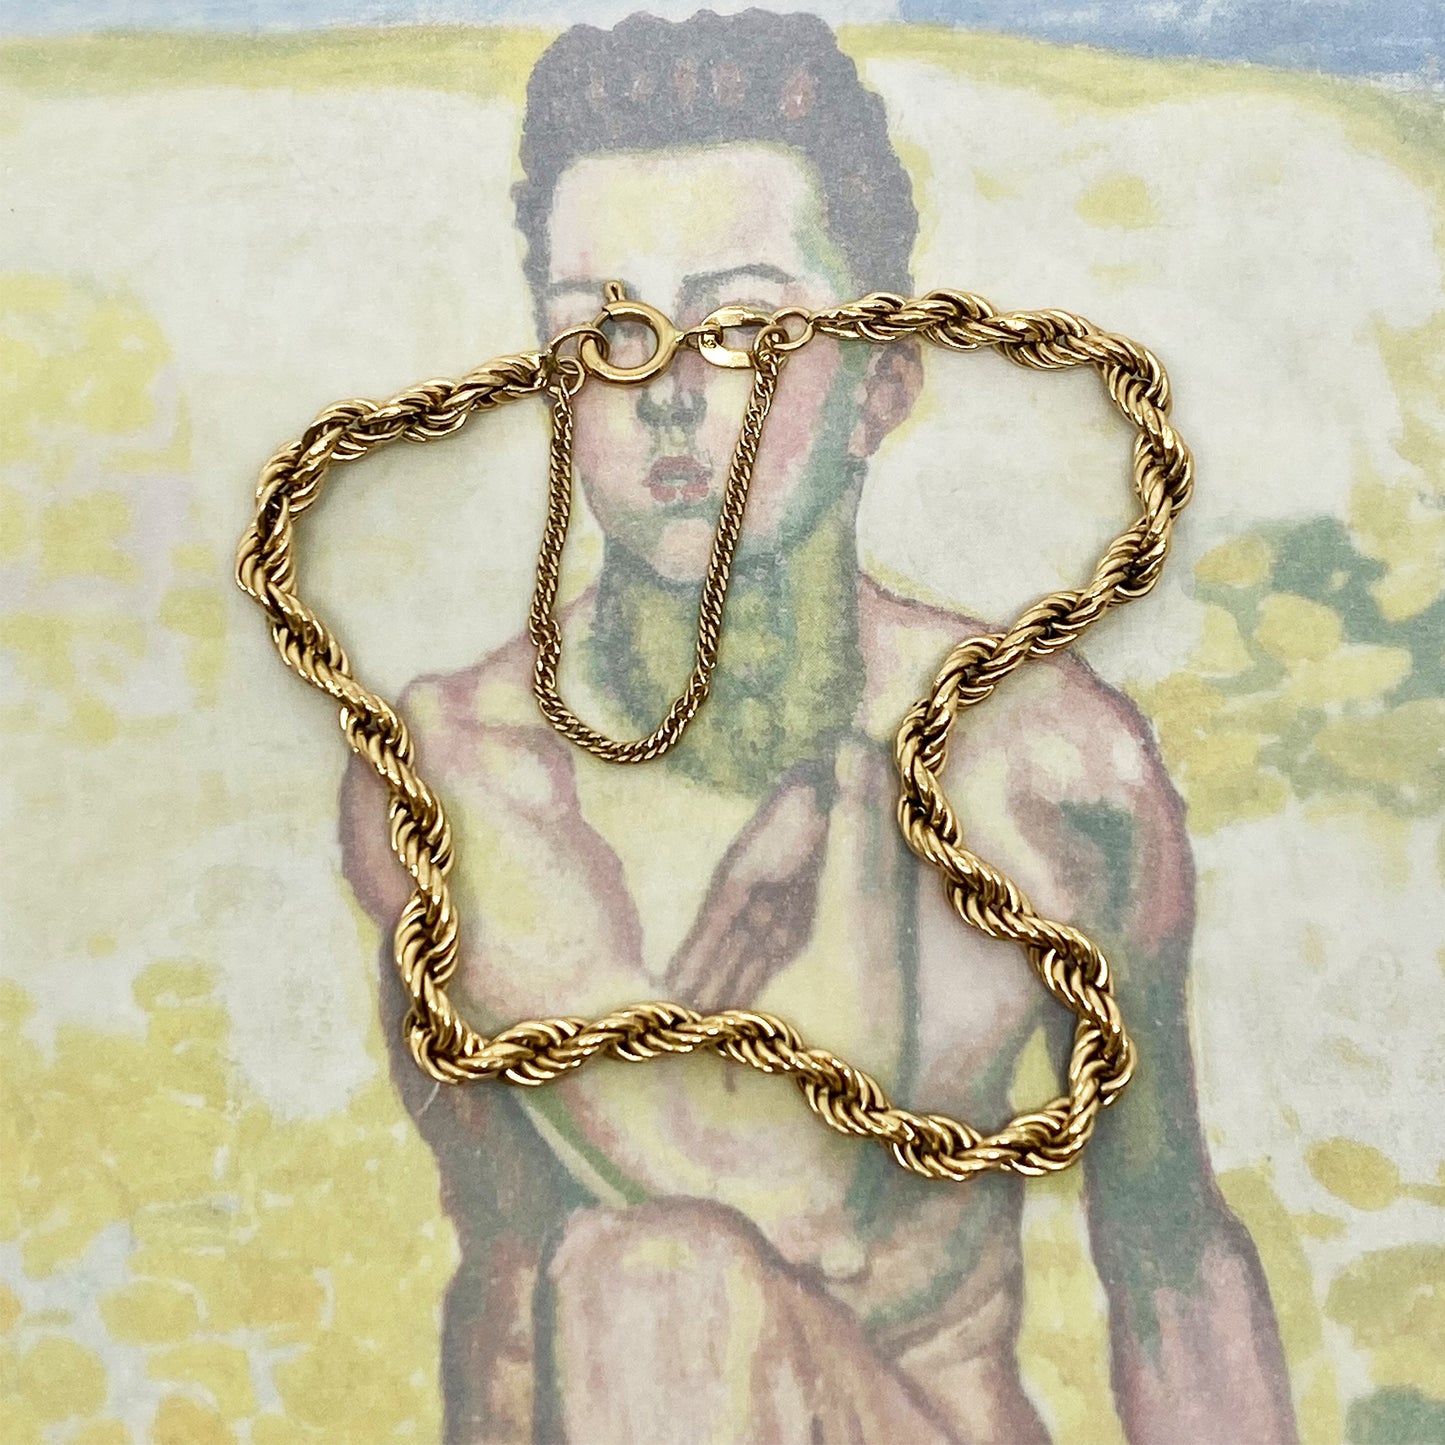 Vintage 1980’s 9k Gold Rope Chain Bracelet